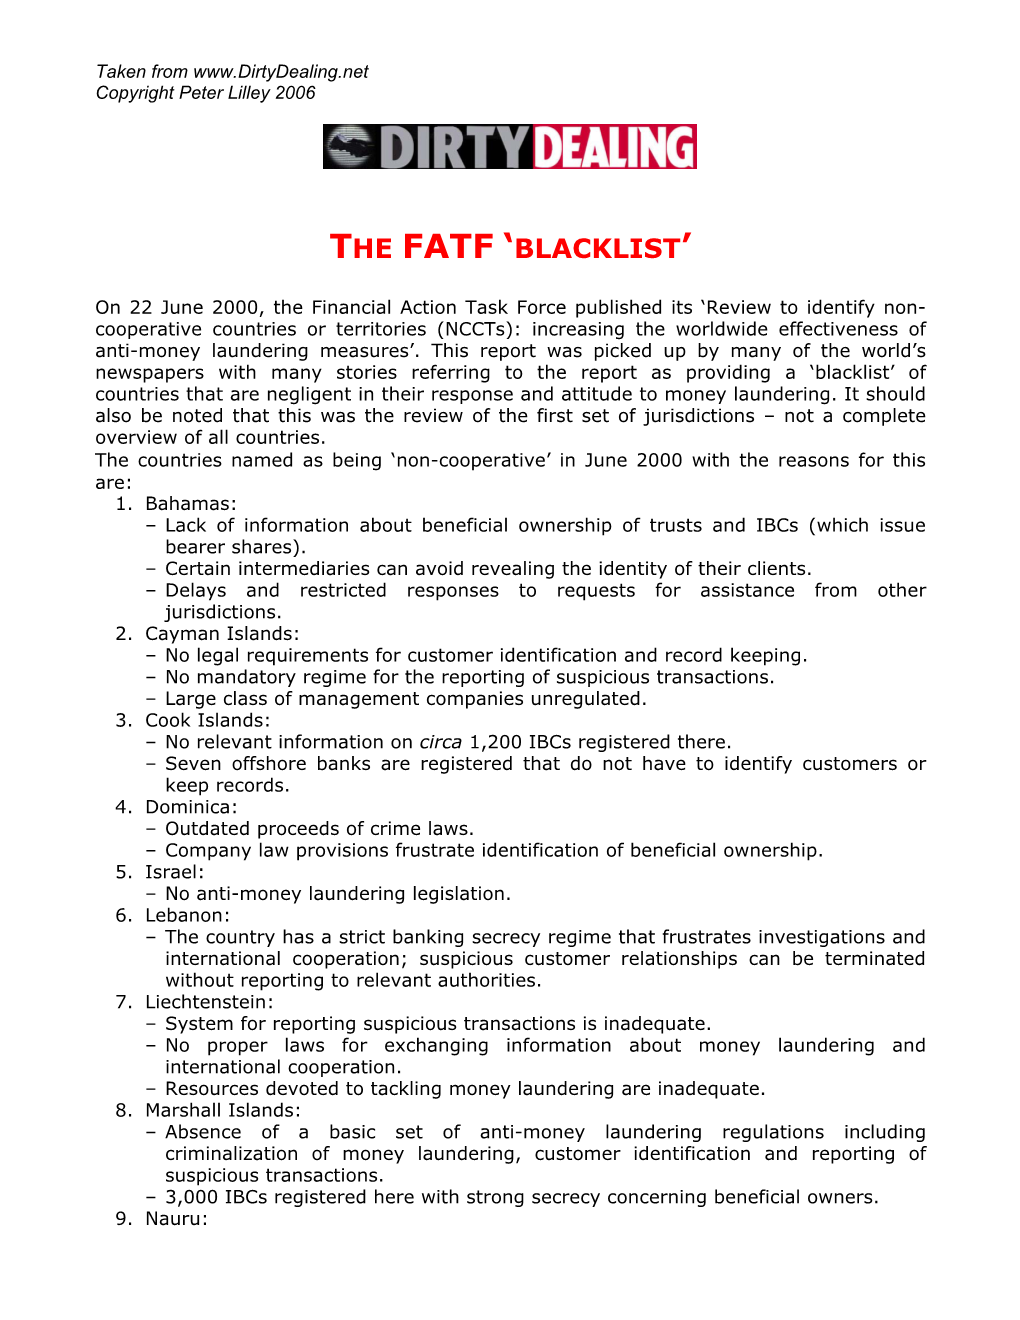 The Fatf 'Blacklist'